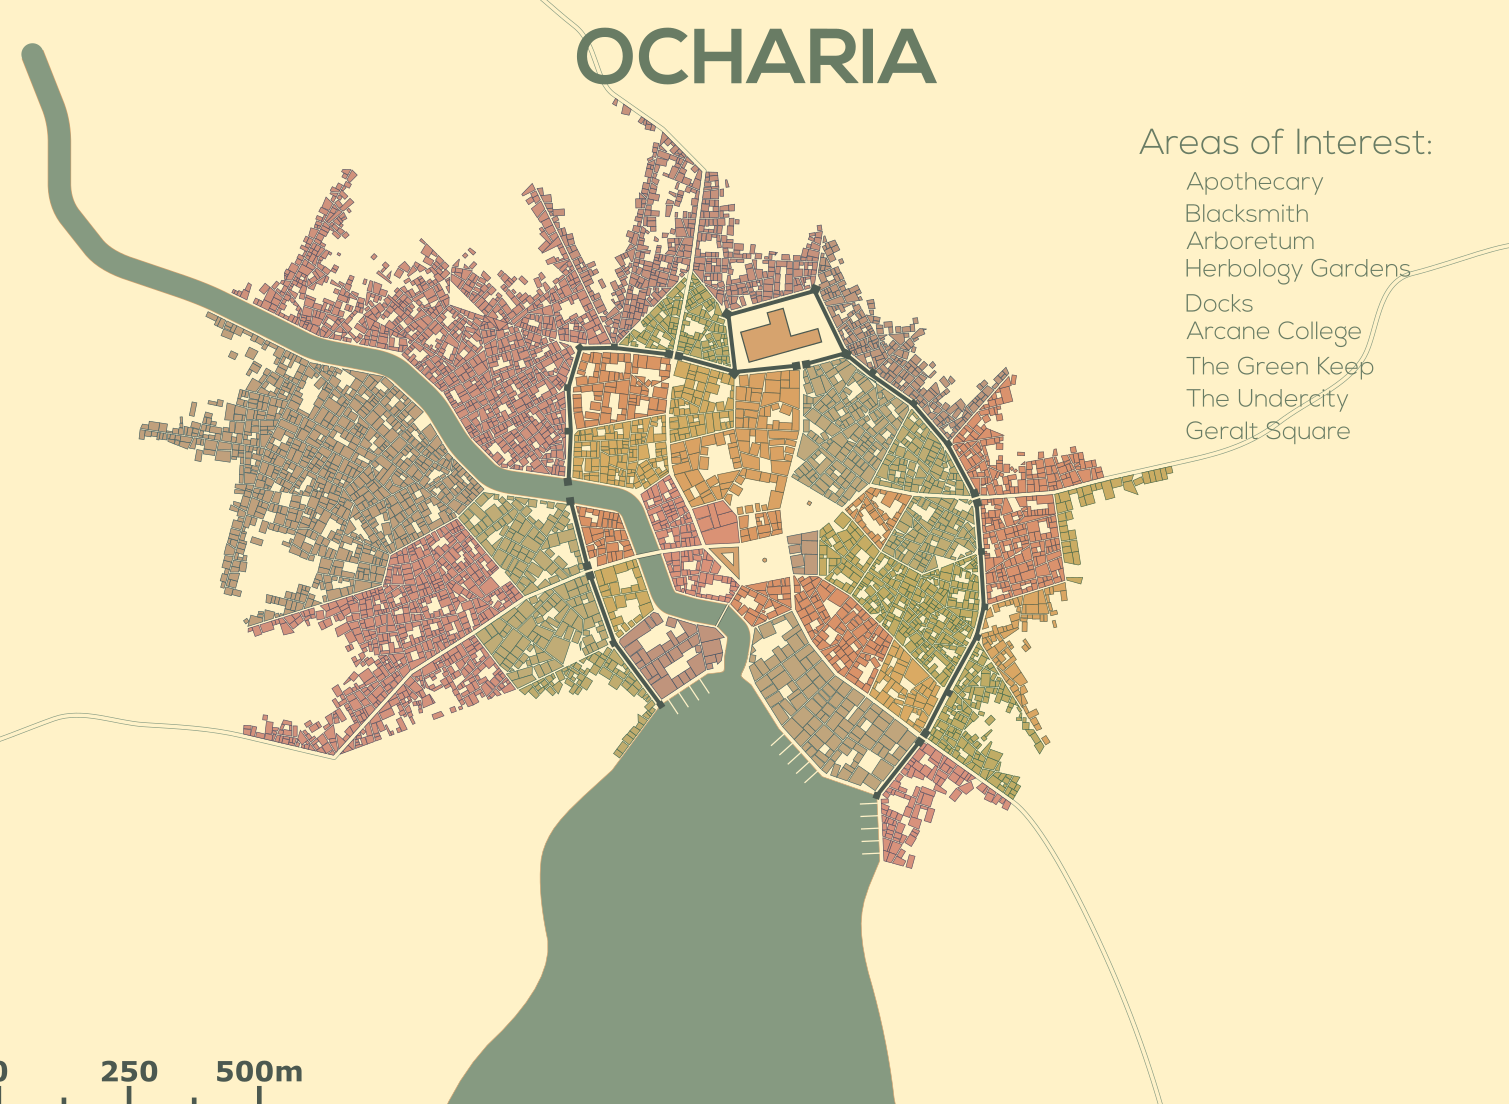 Ocharia